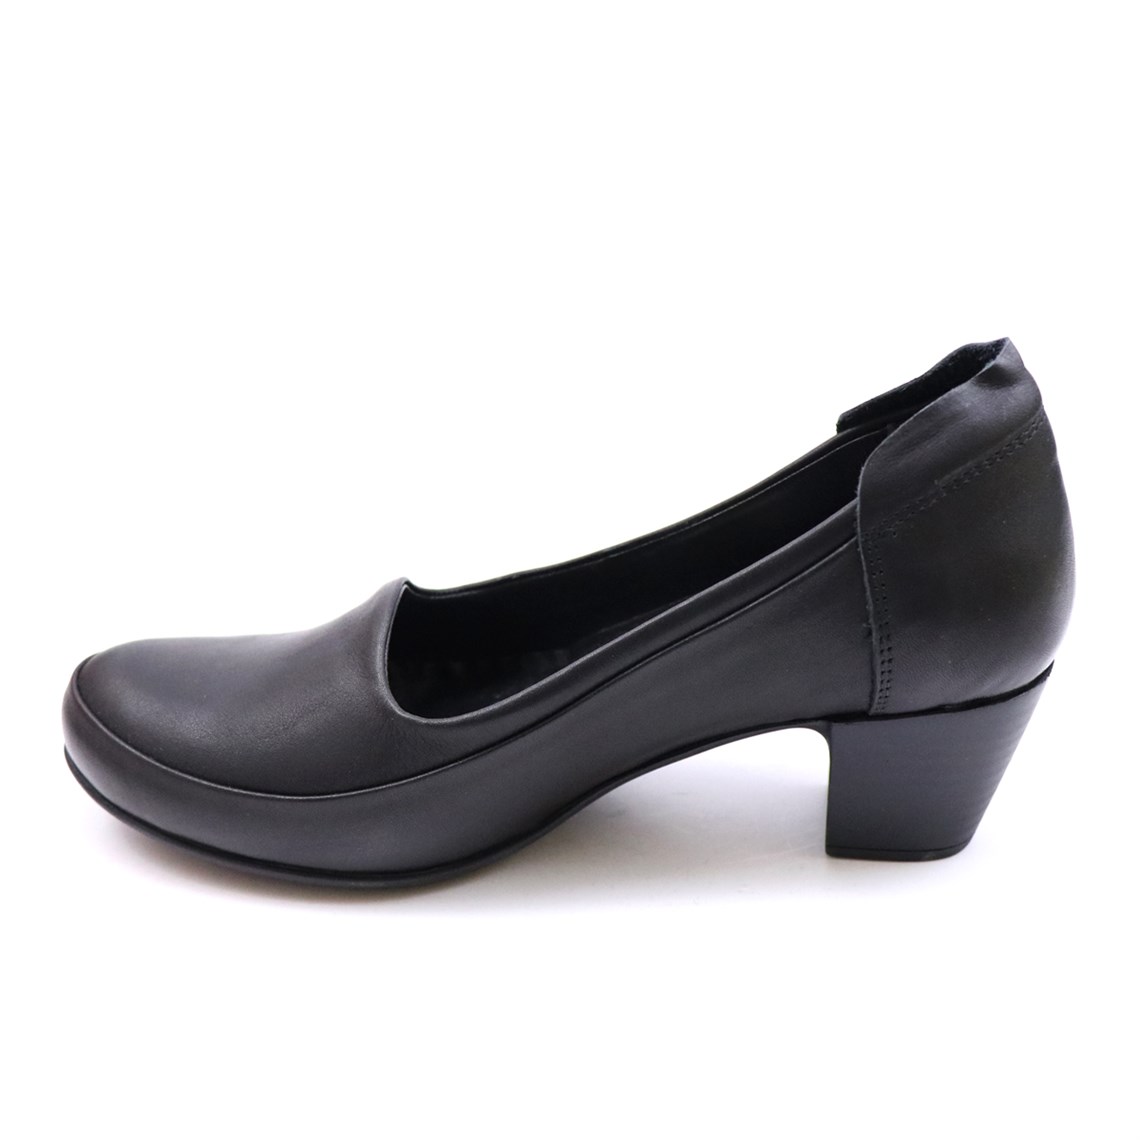 Mammamia Deri Topuklu Ortopedik Siyah Faber Kadın Ayakkabı 3190